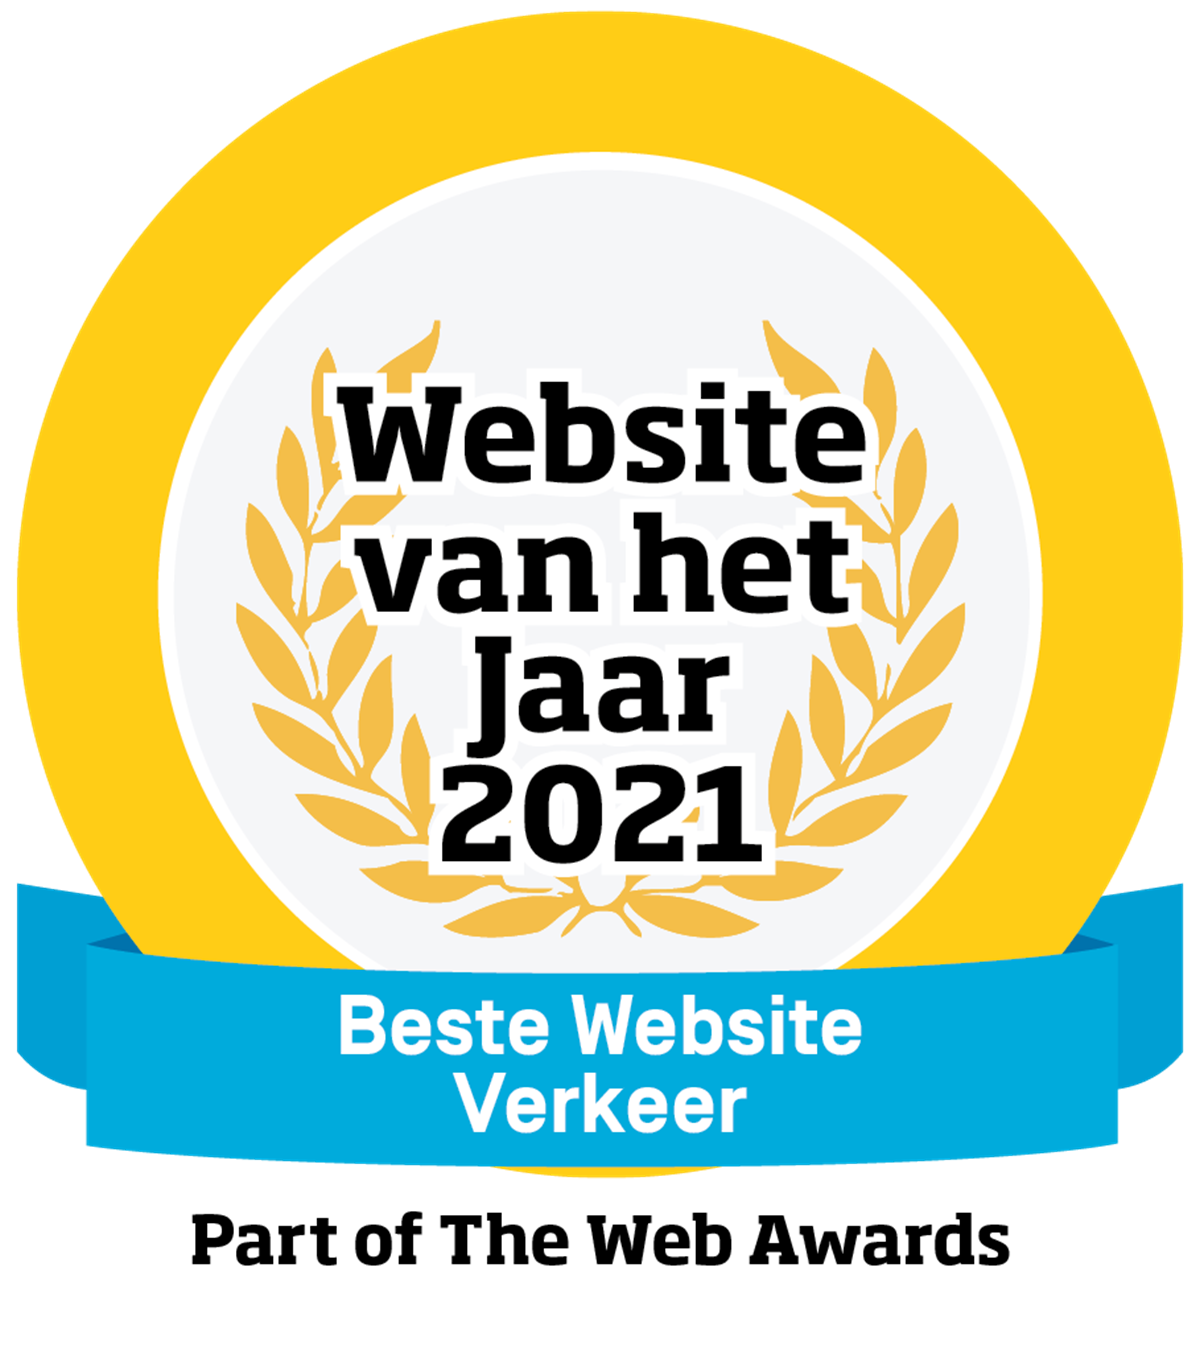 Logo voor beste website van het jaar in de categorie Verkeer